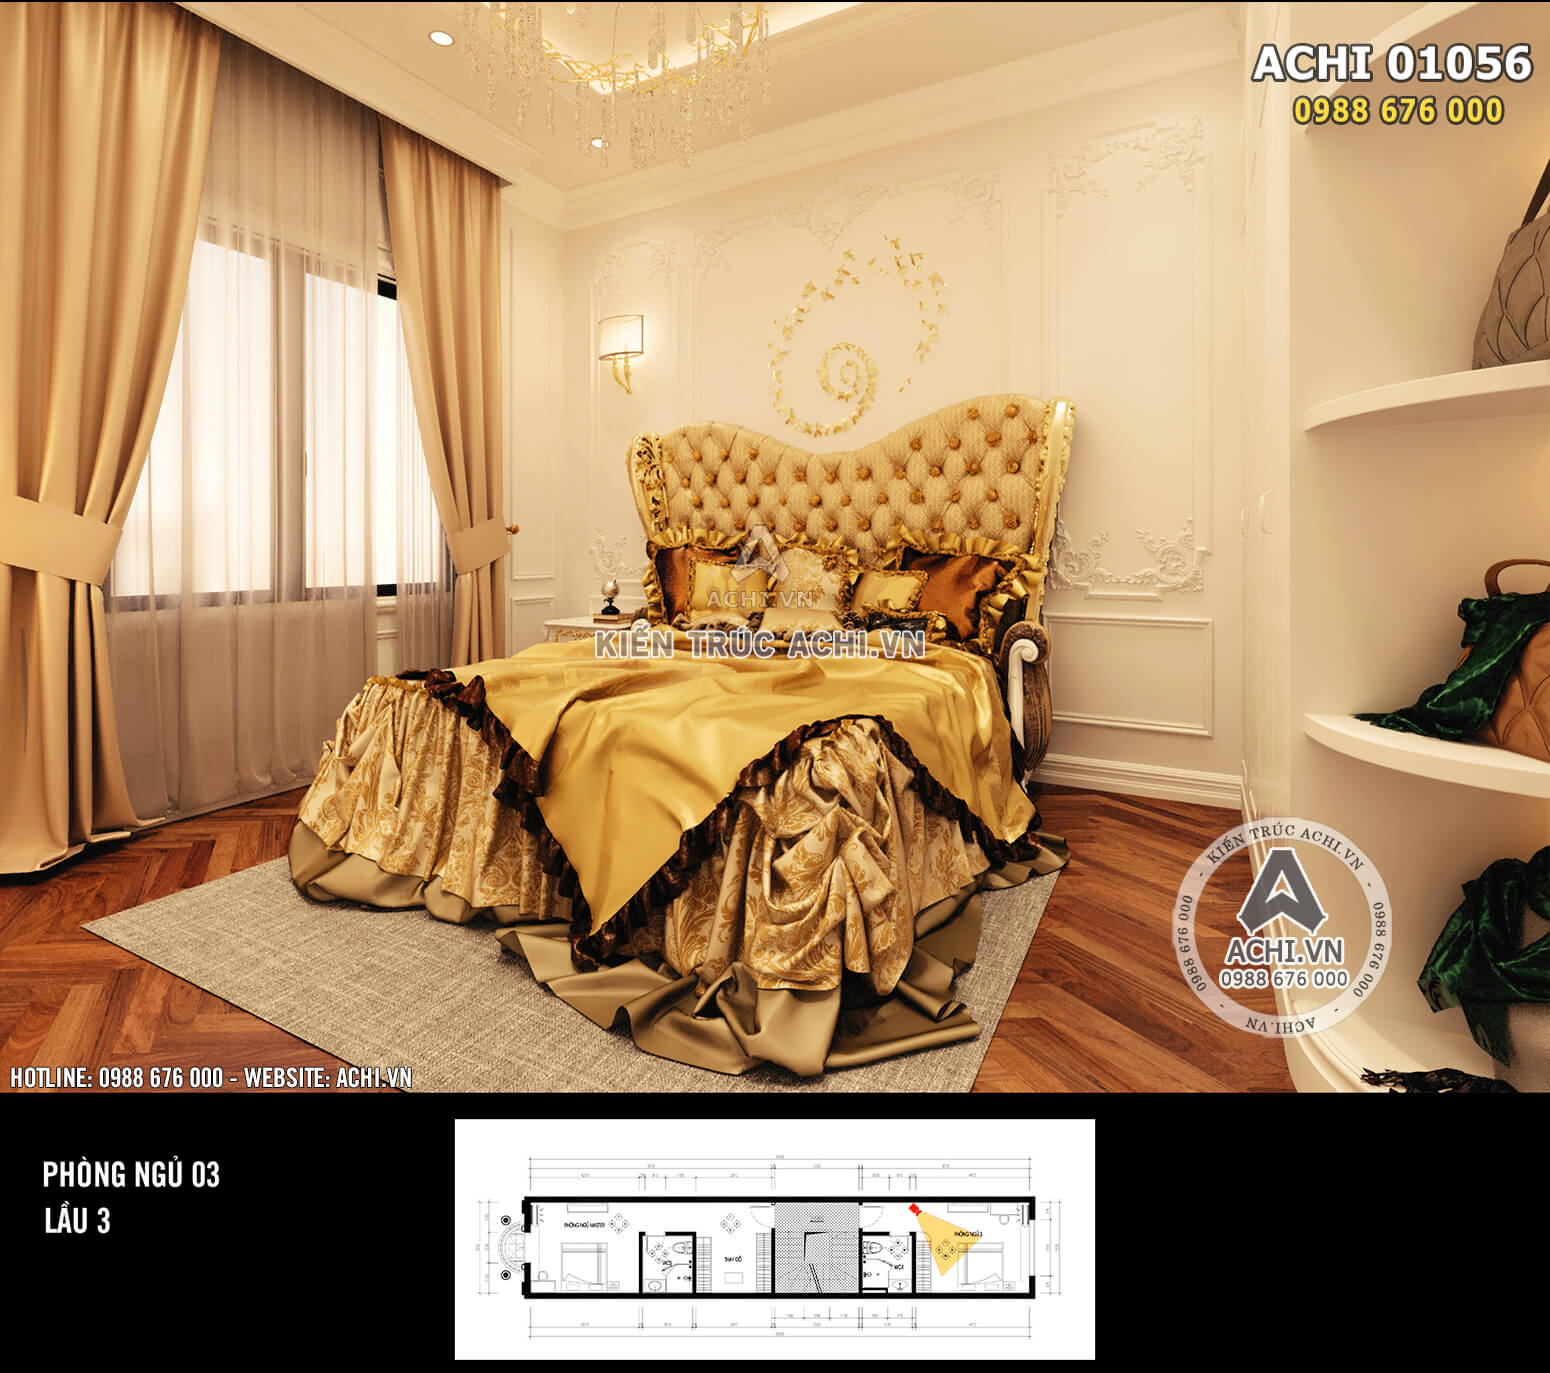 Hình ảnh: Không gian phòng ngủ 3 được thiết kế với tone màu vàng chủ đạo